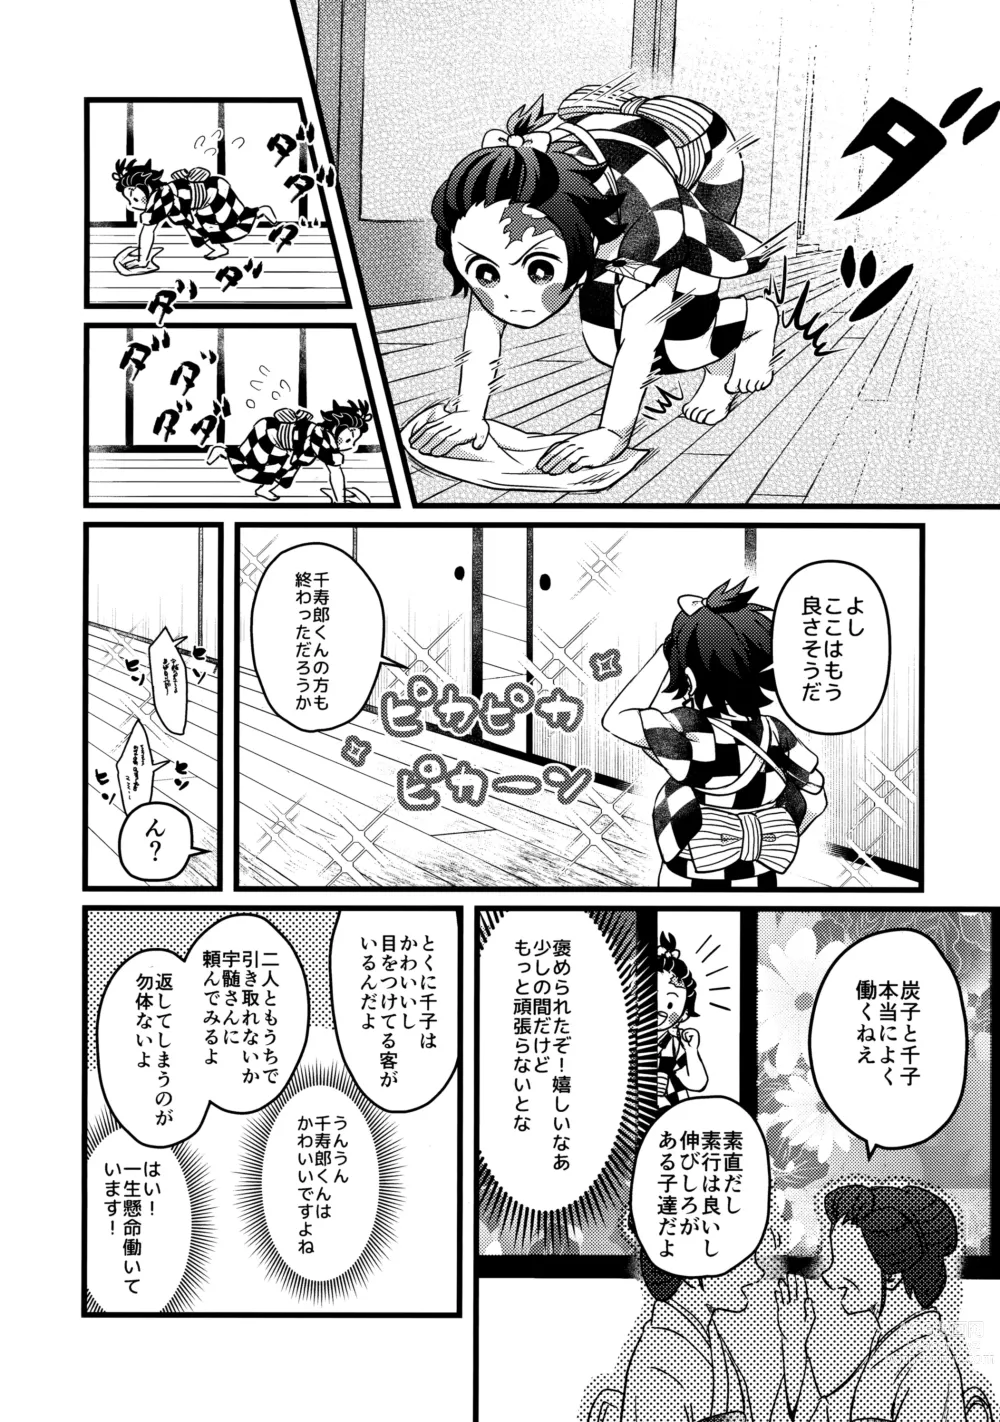 Page 15 of doujinshi Ore-tachi Minarai nan desu ga!?